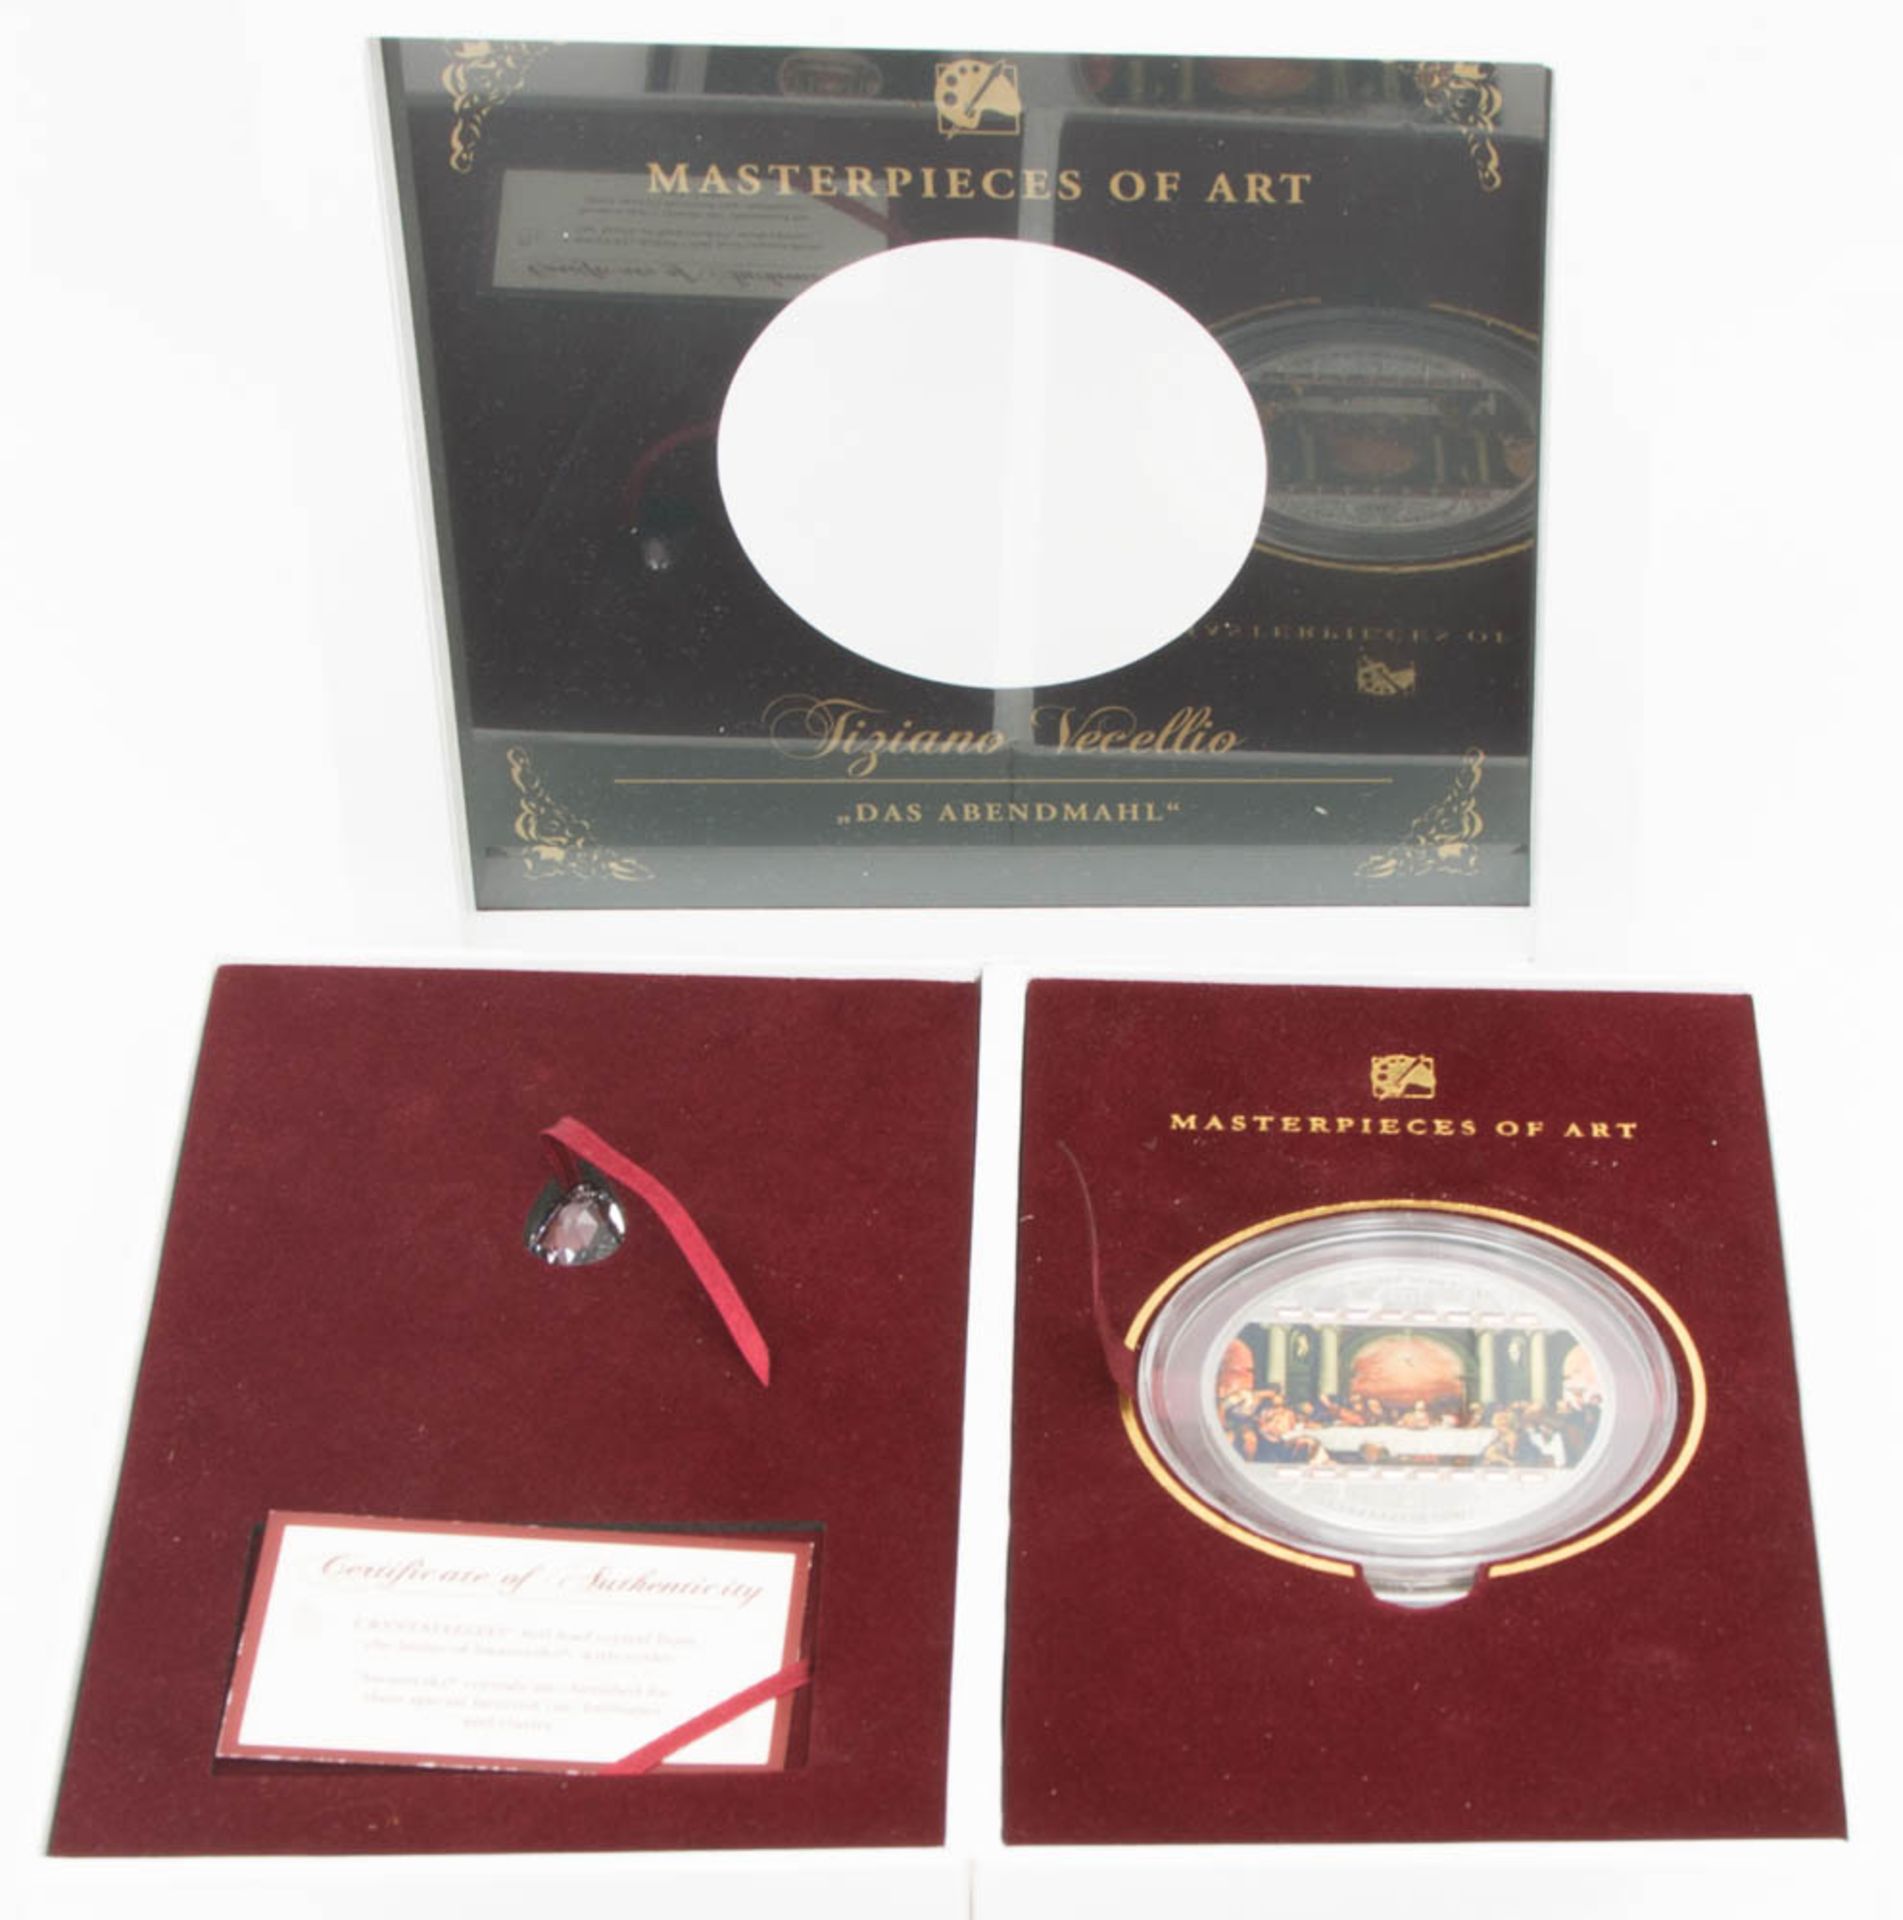 20 US-Dollar Silbermünze - "Das Letzte Abendmahl" - Masterpieces of Art